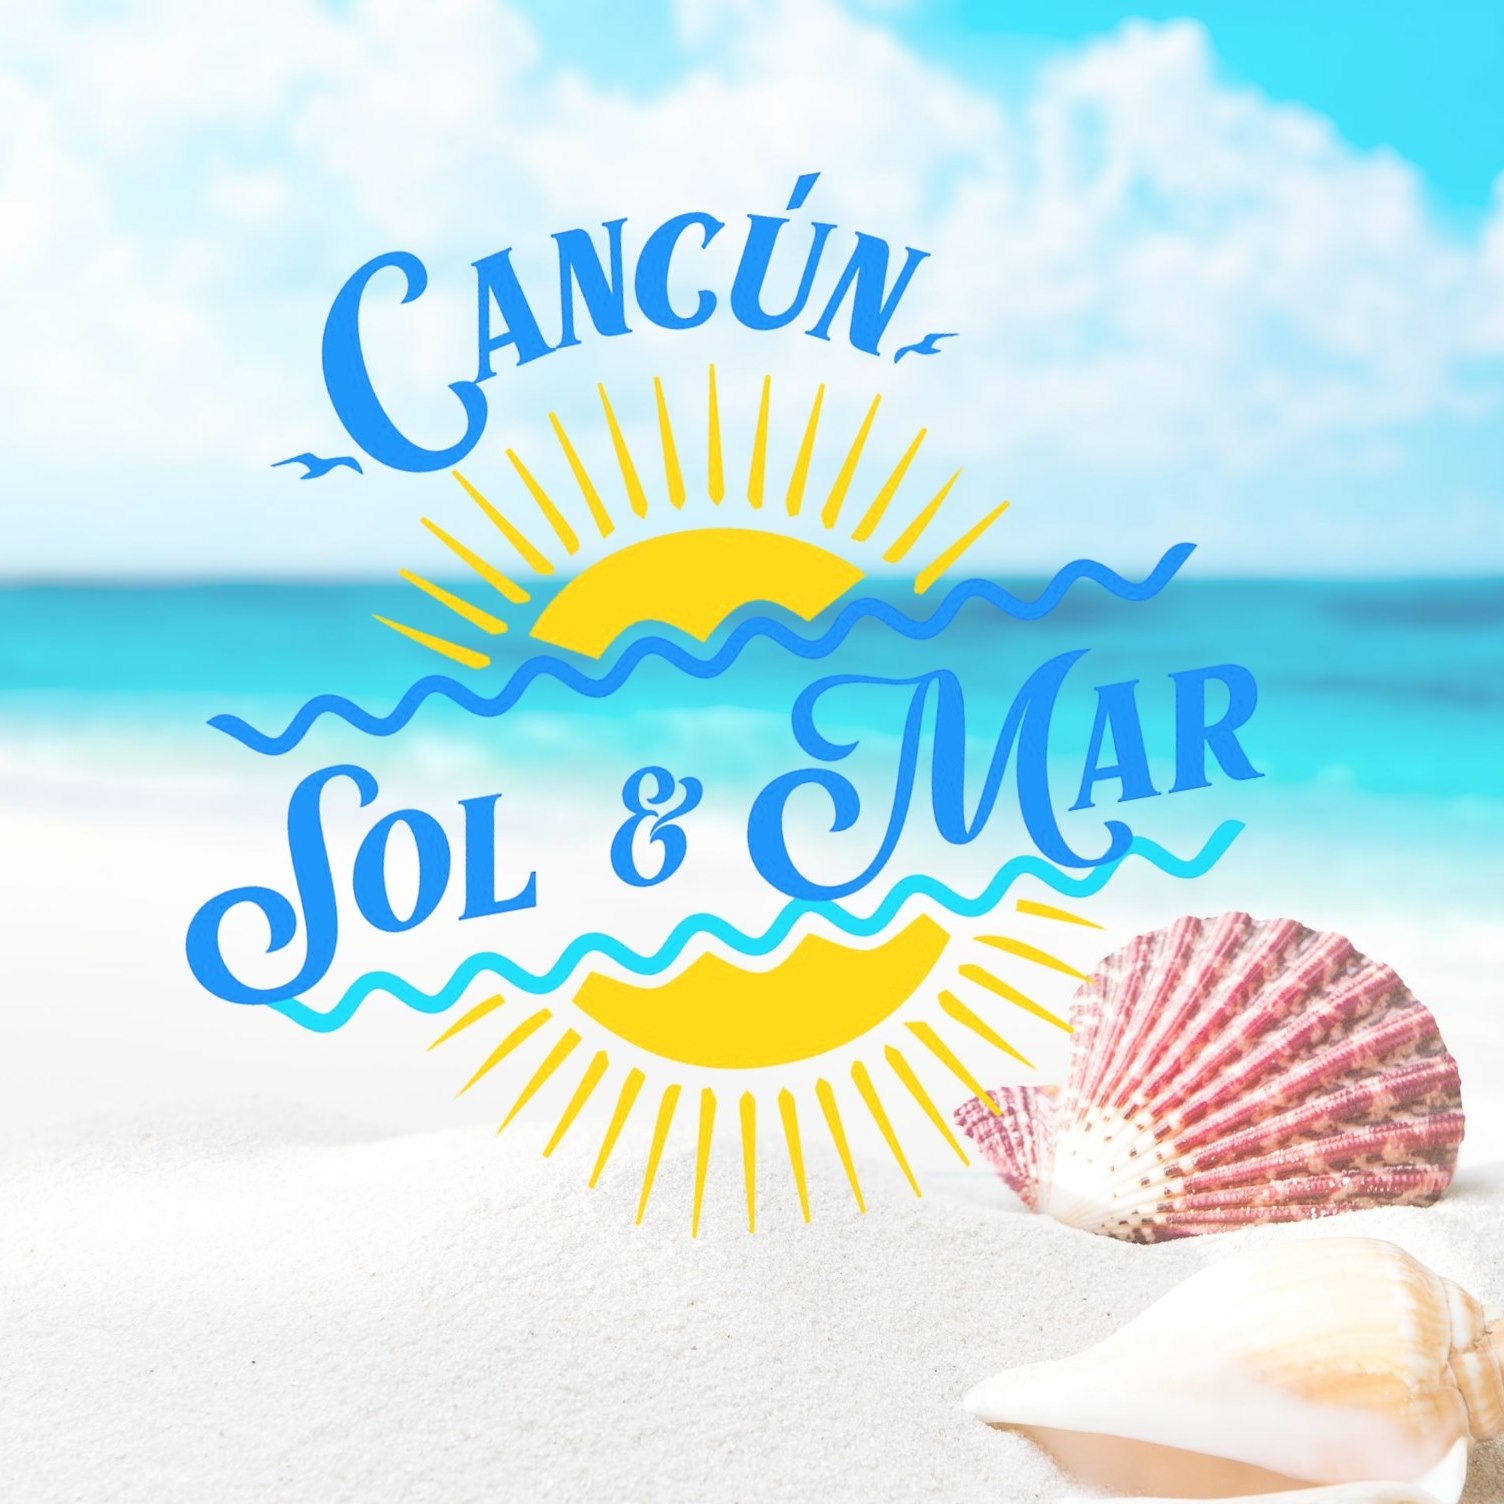 Agencia de viajes Cancun, Sol Y Mar